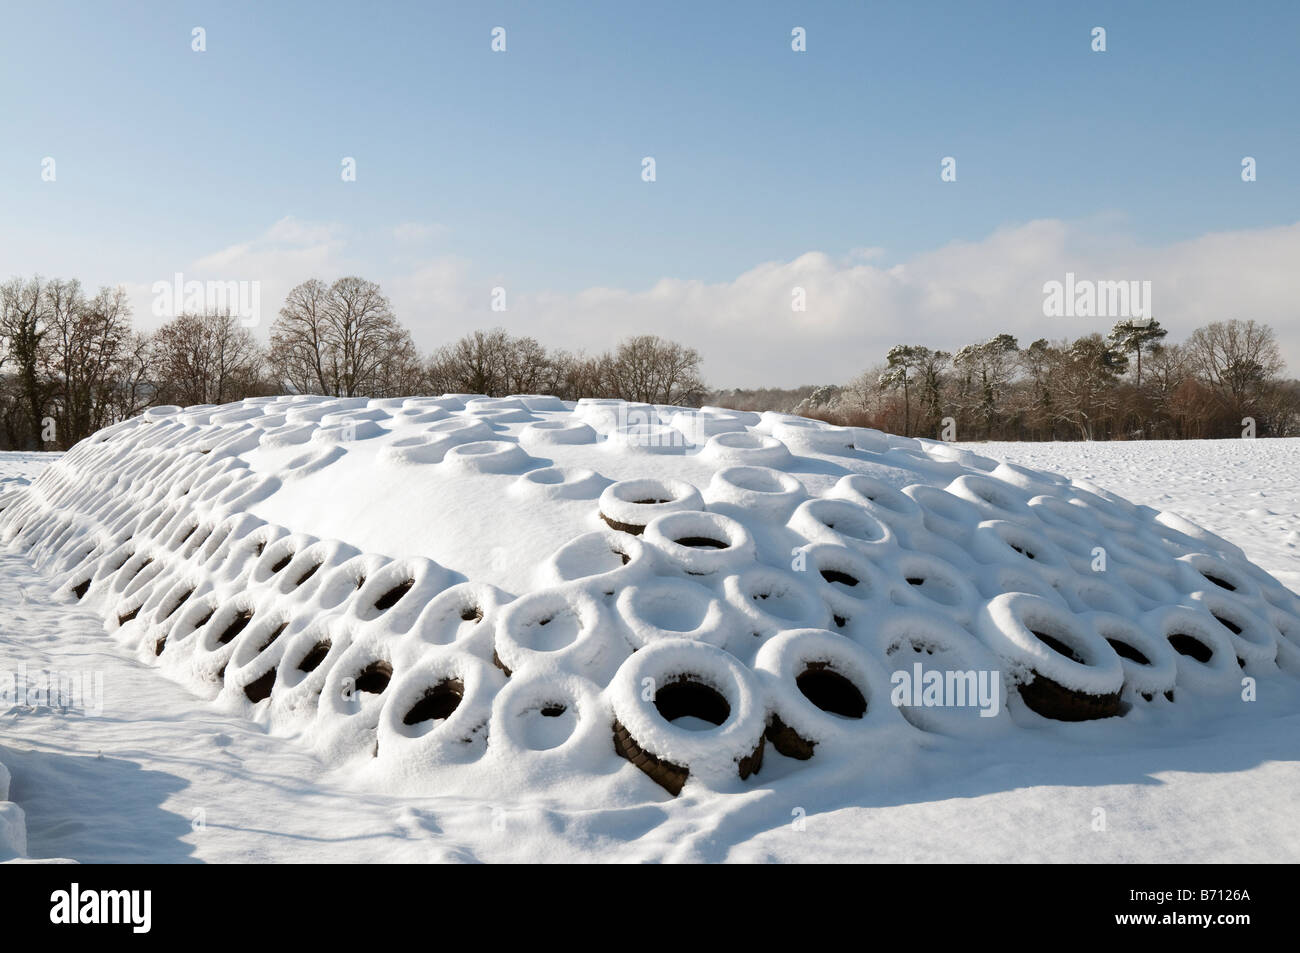 Fermeture de l'alimentation animale (maïs) recouvert de neige fraîche, sud-Touraine, France. Banque D'Images